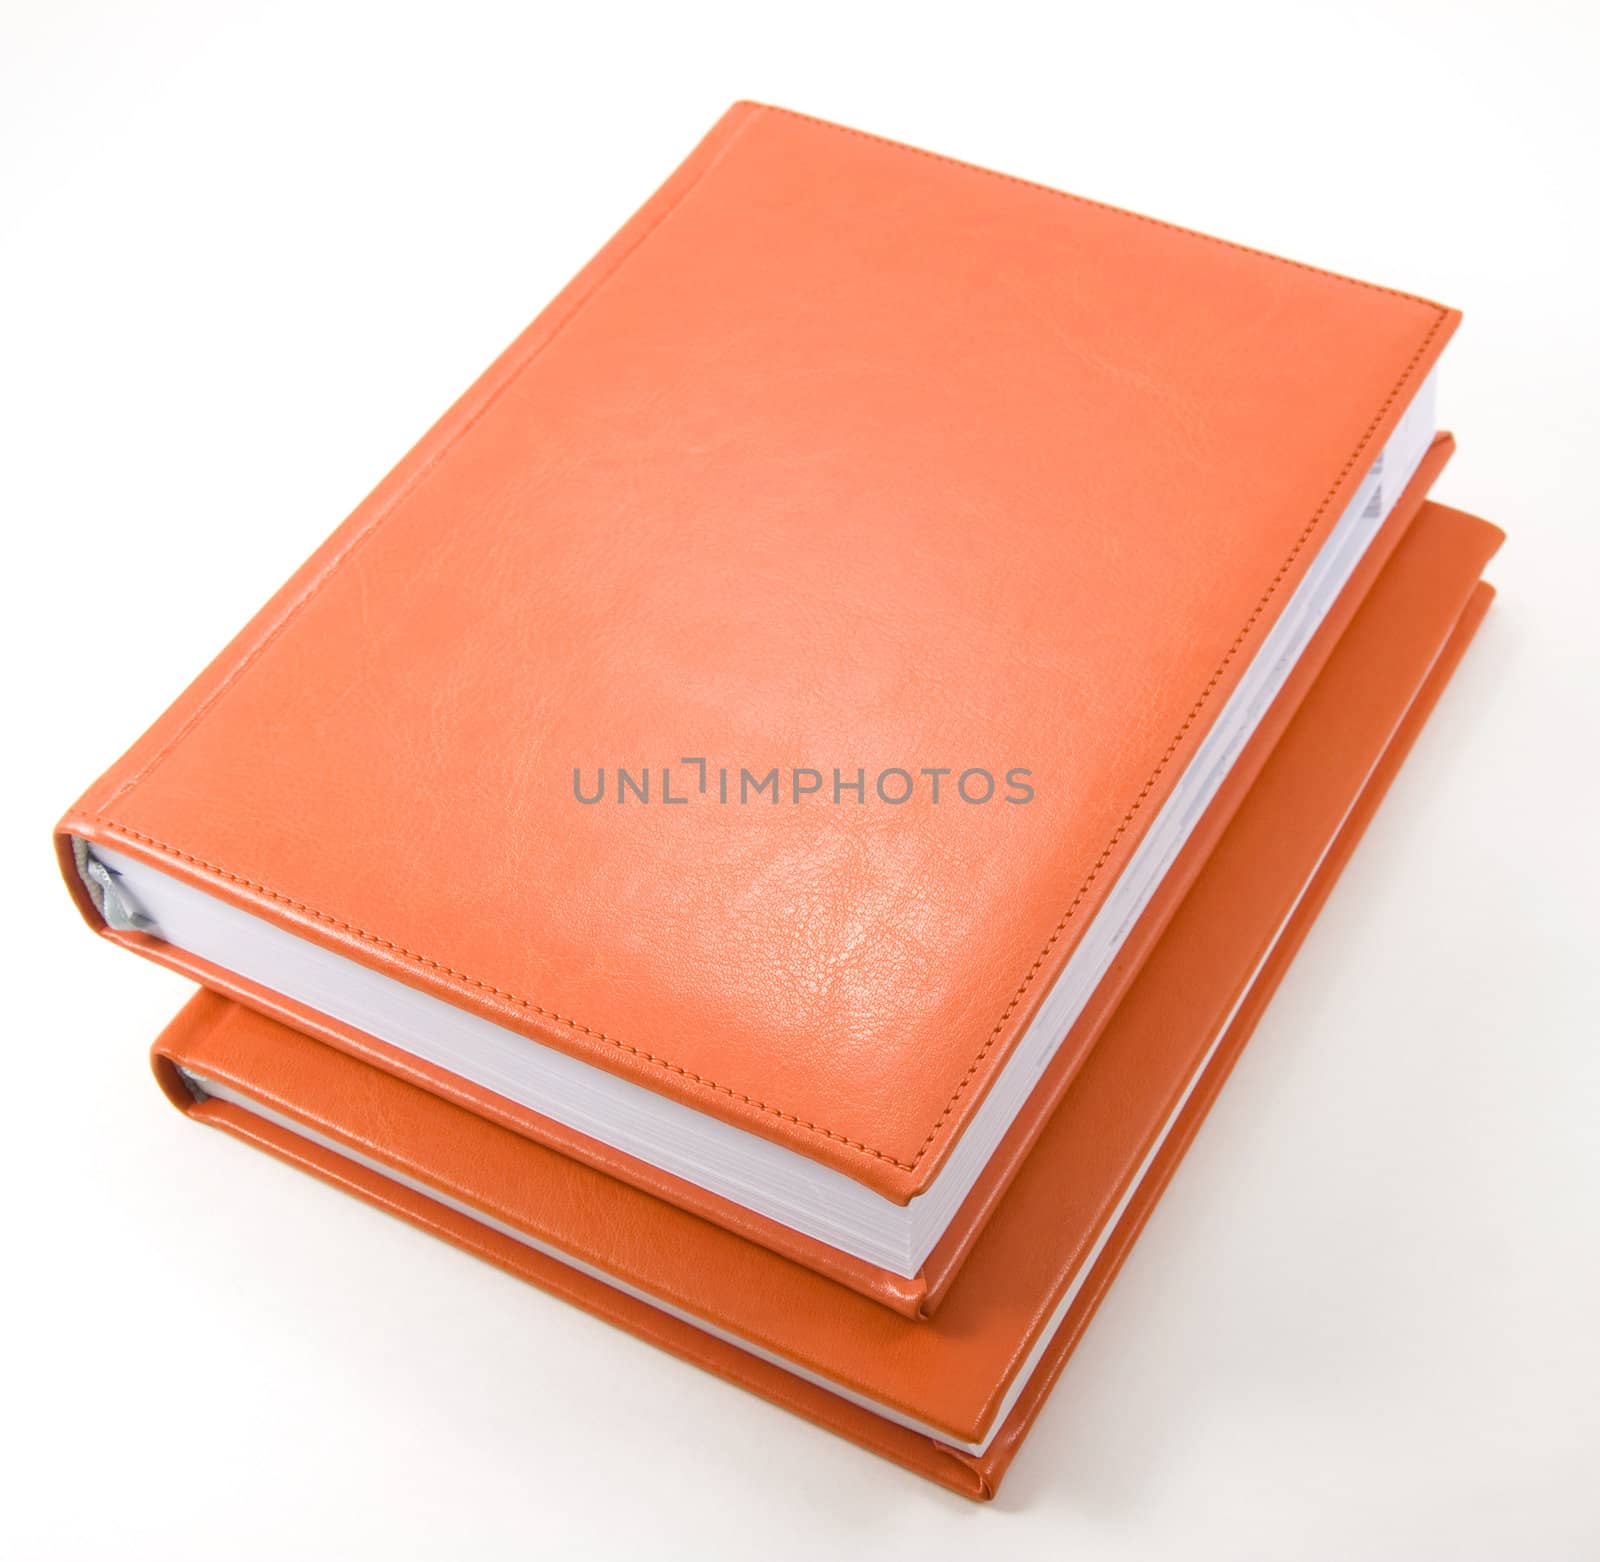 Two orange diaries on white by serpl